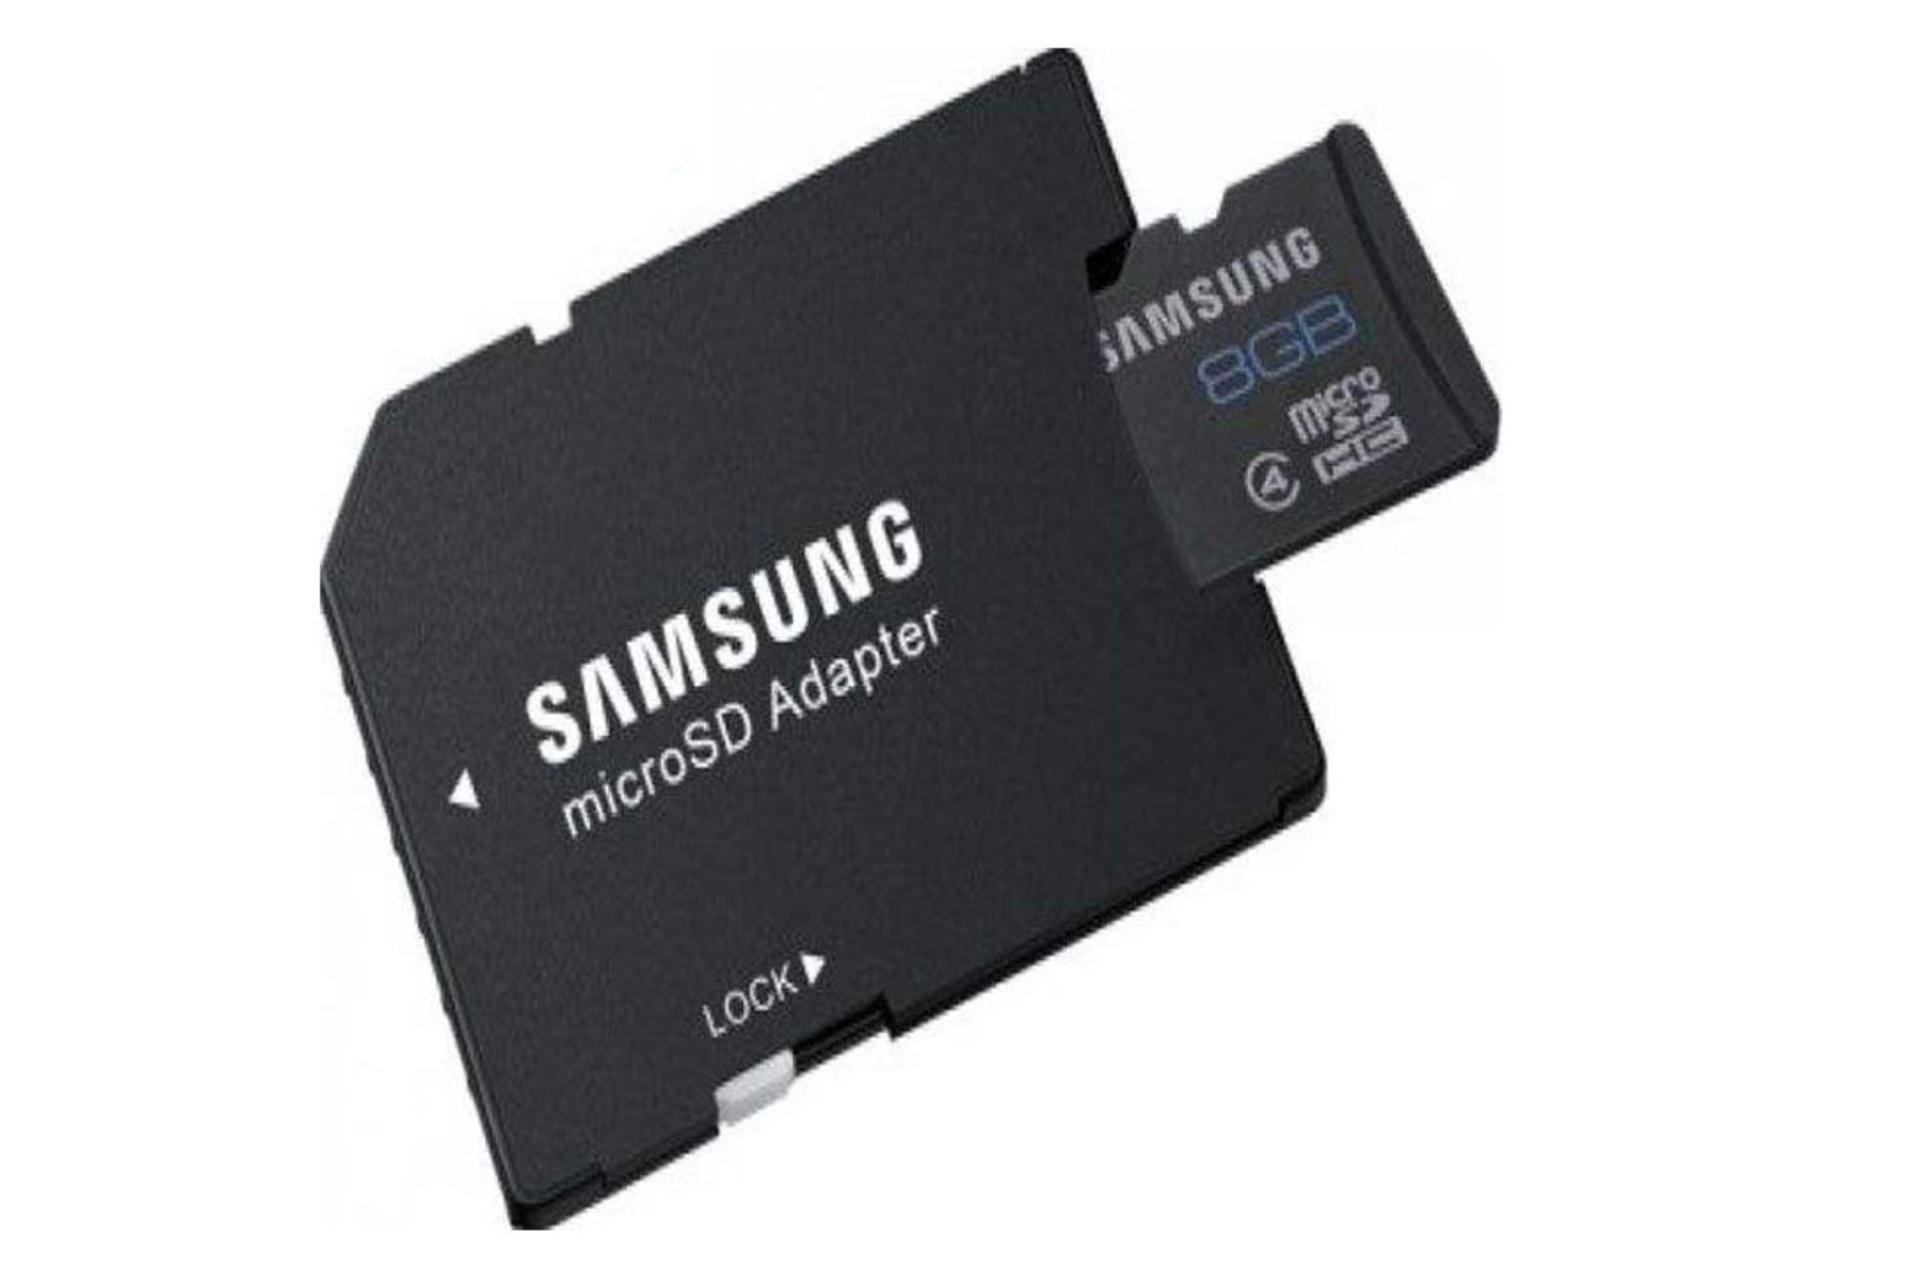 مرجع متخصصين ايران Samsung u microSDHC Class 4 8GB